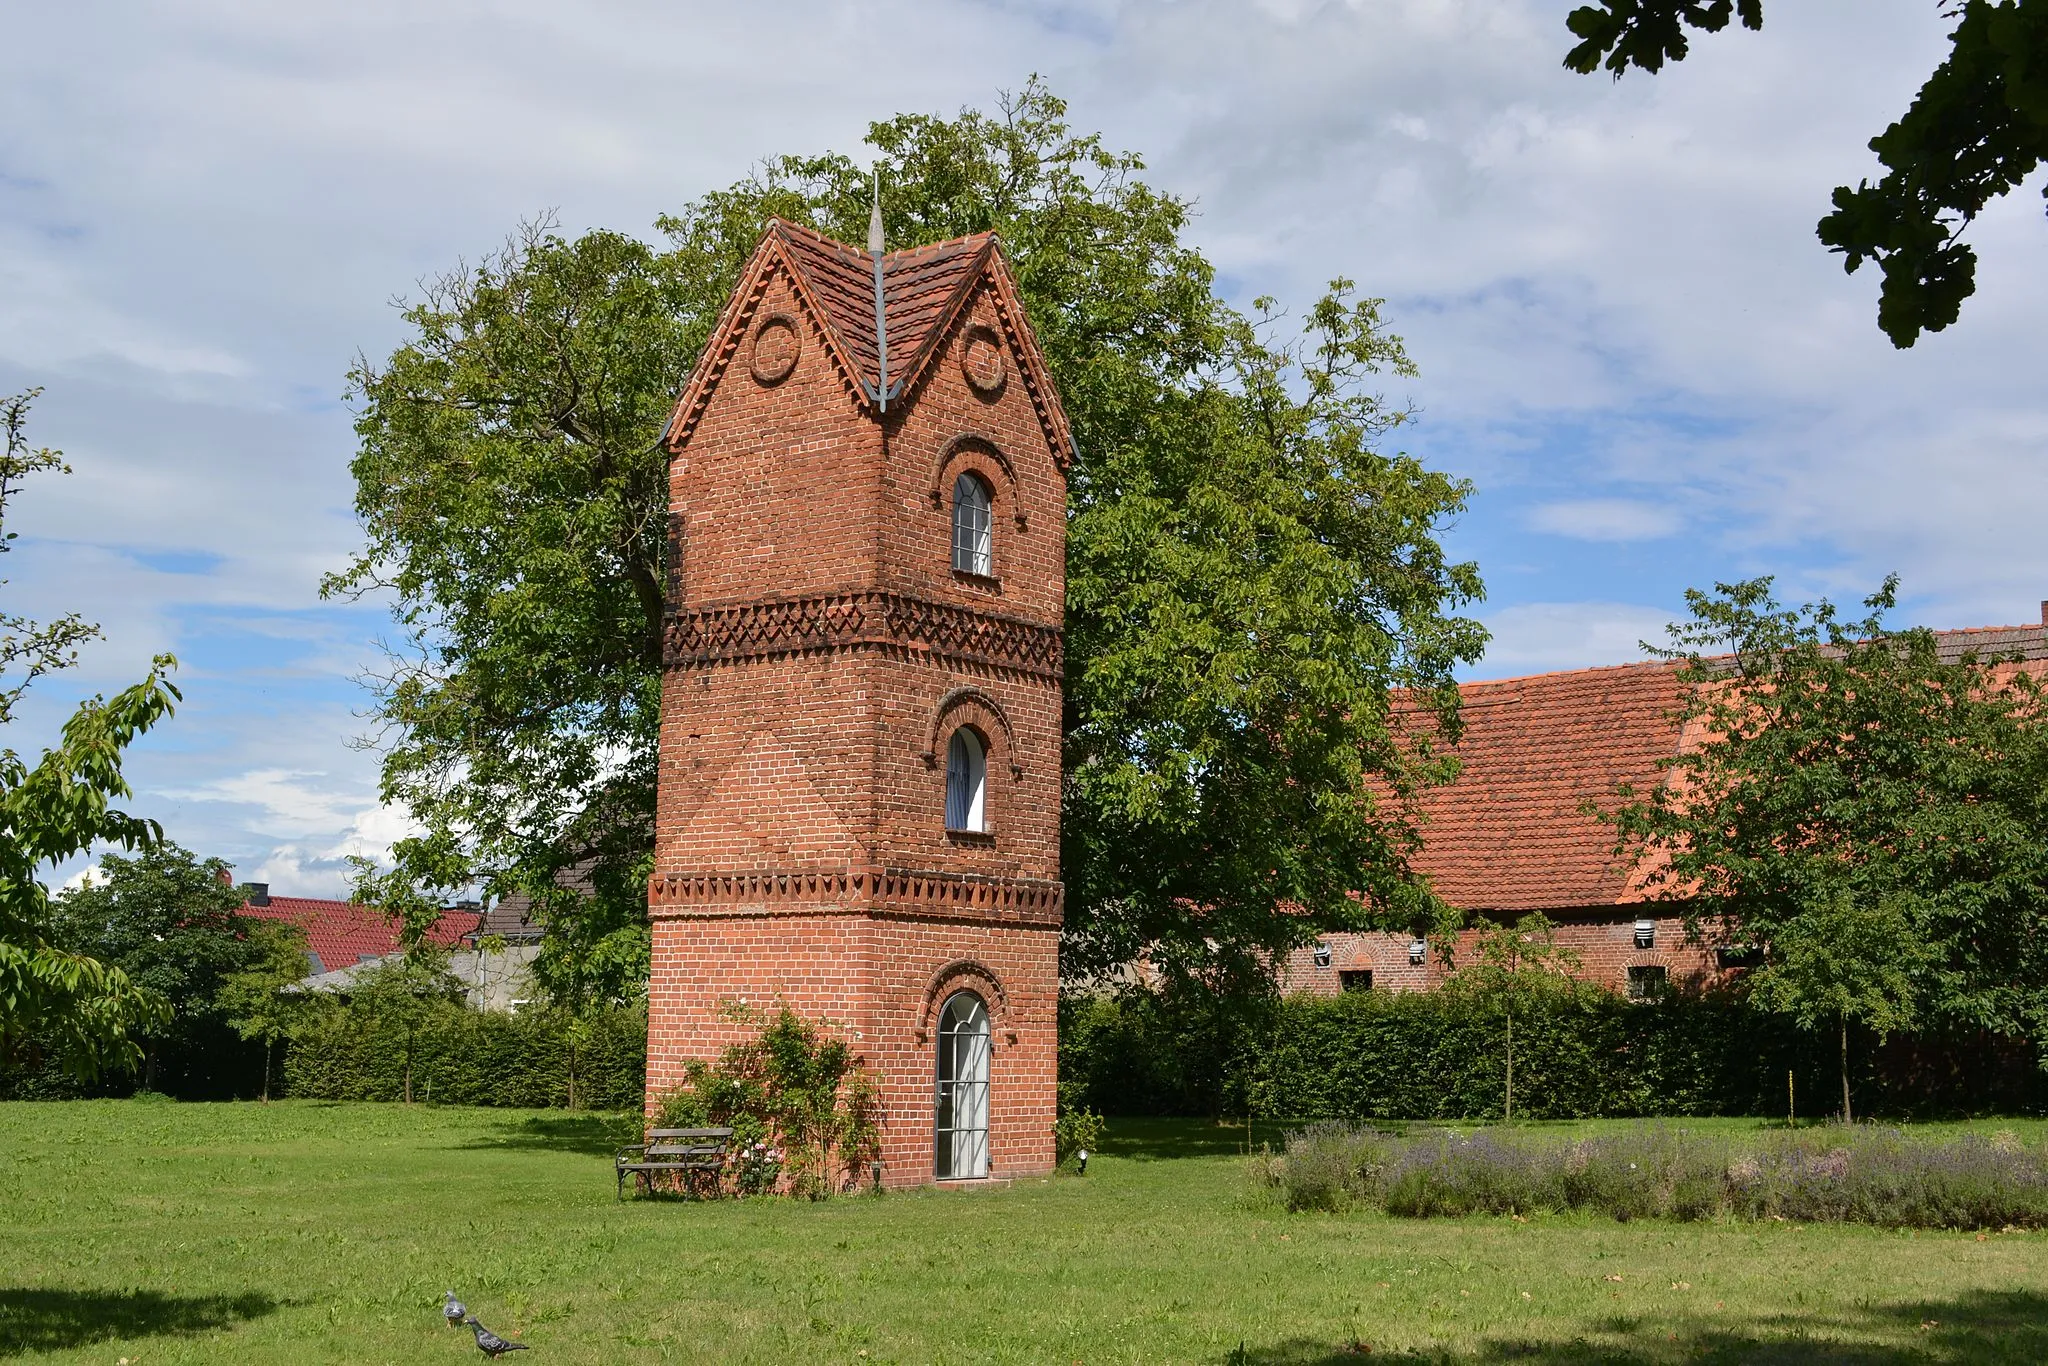 Photo showing: Denkmalgeschützter Taubenturm auf dem Wirtschaftshof des Herrenhauses in Kleßen, Landkreis Havelland